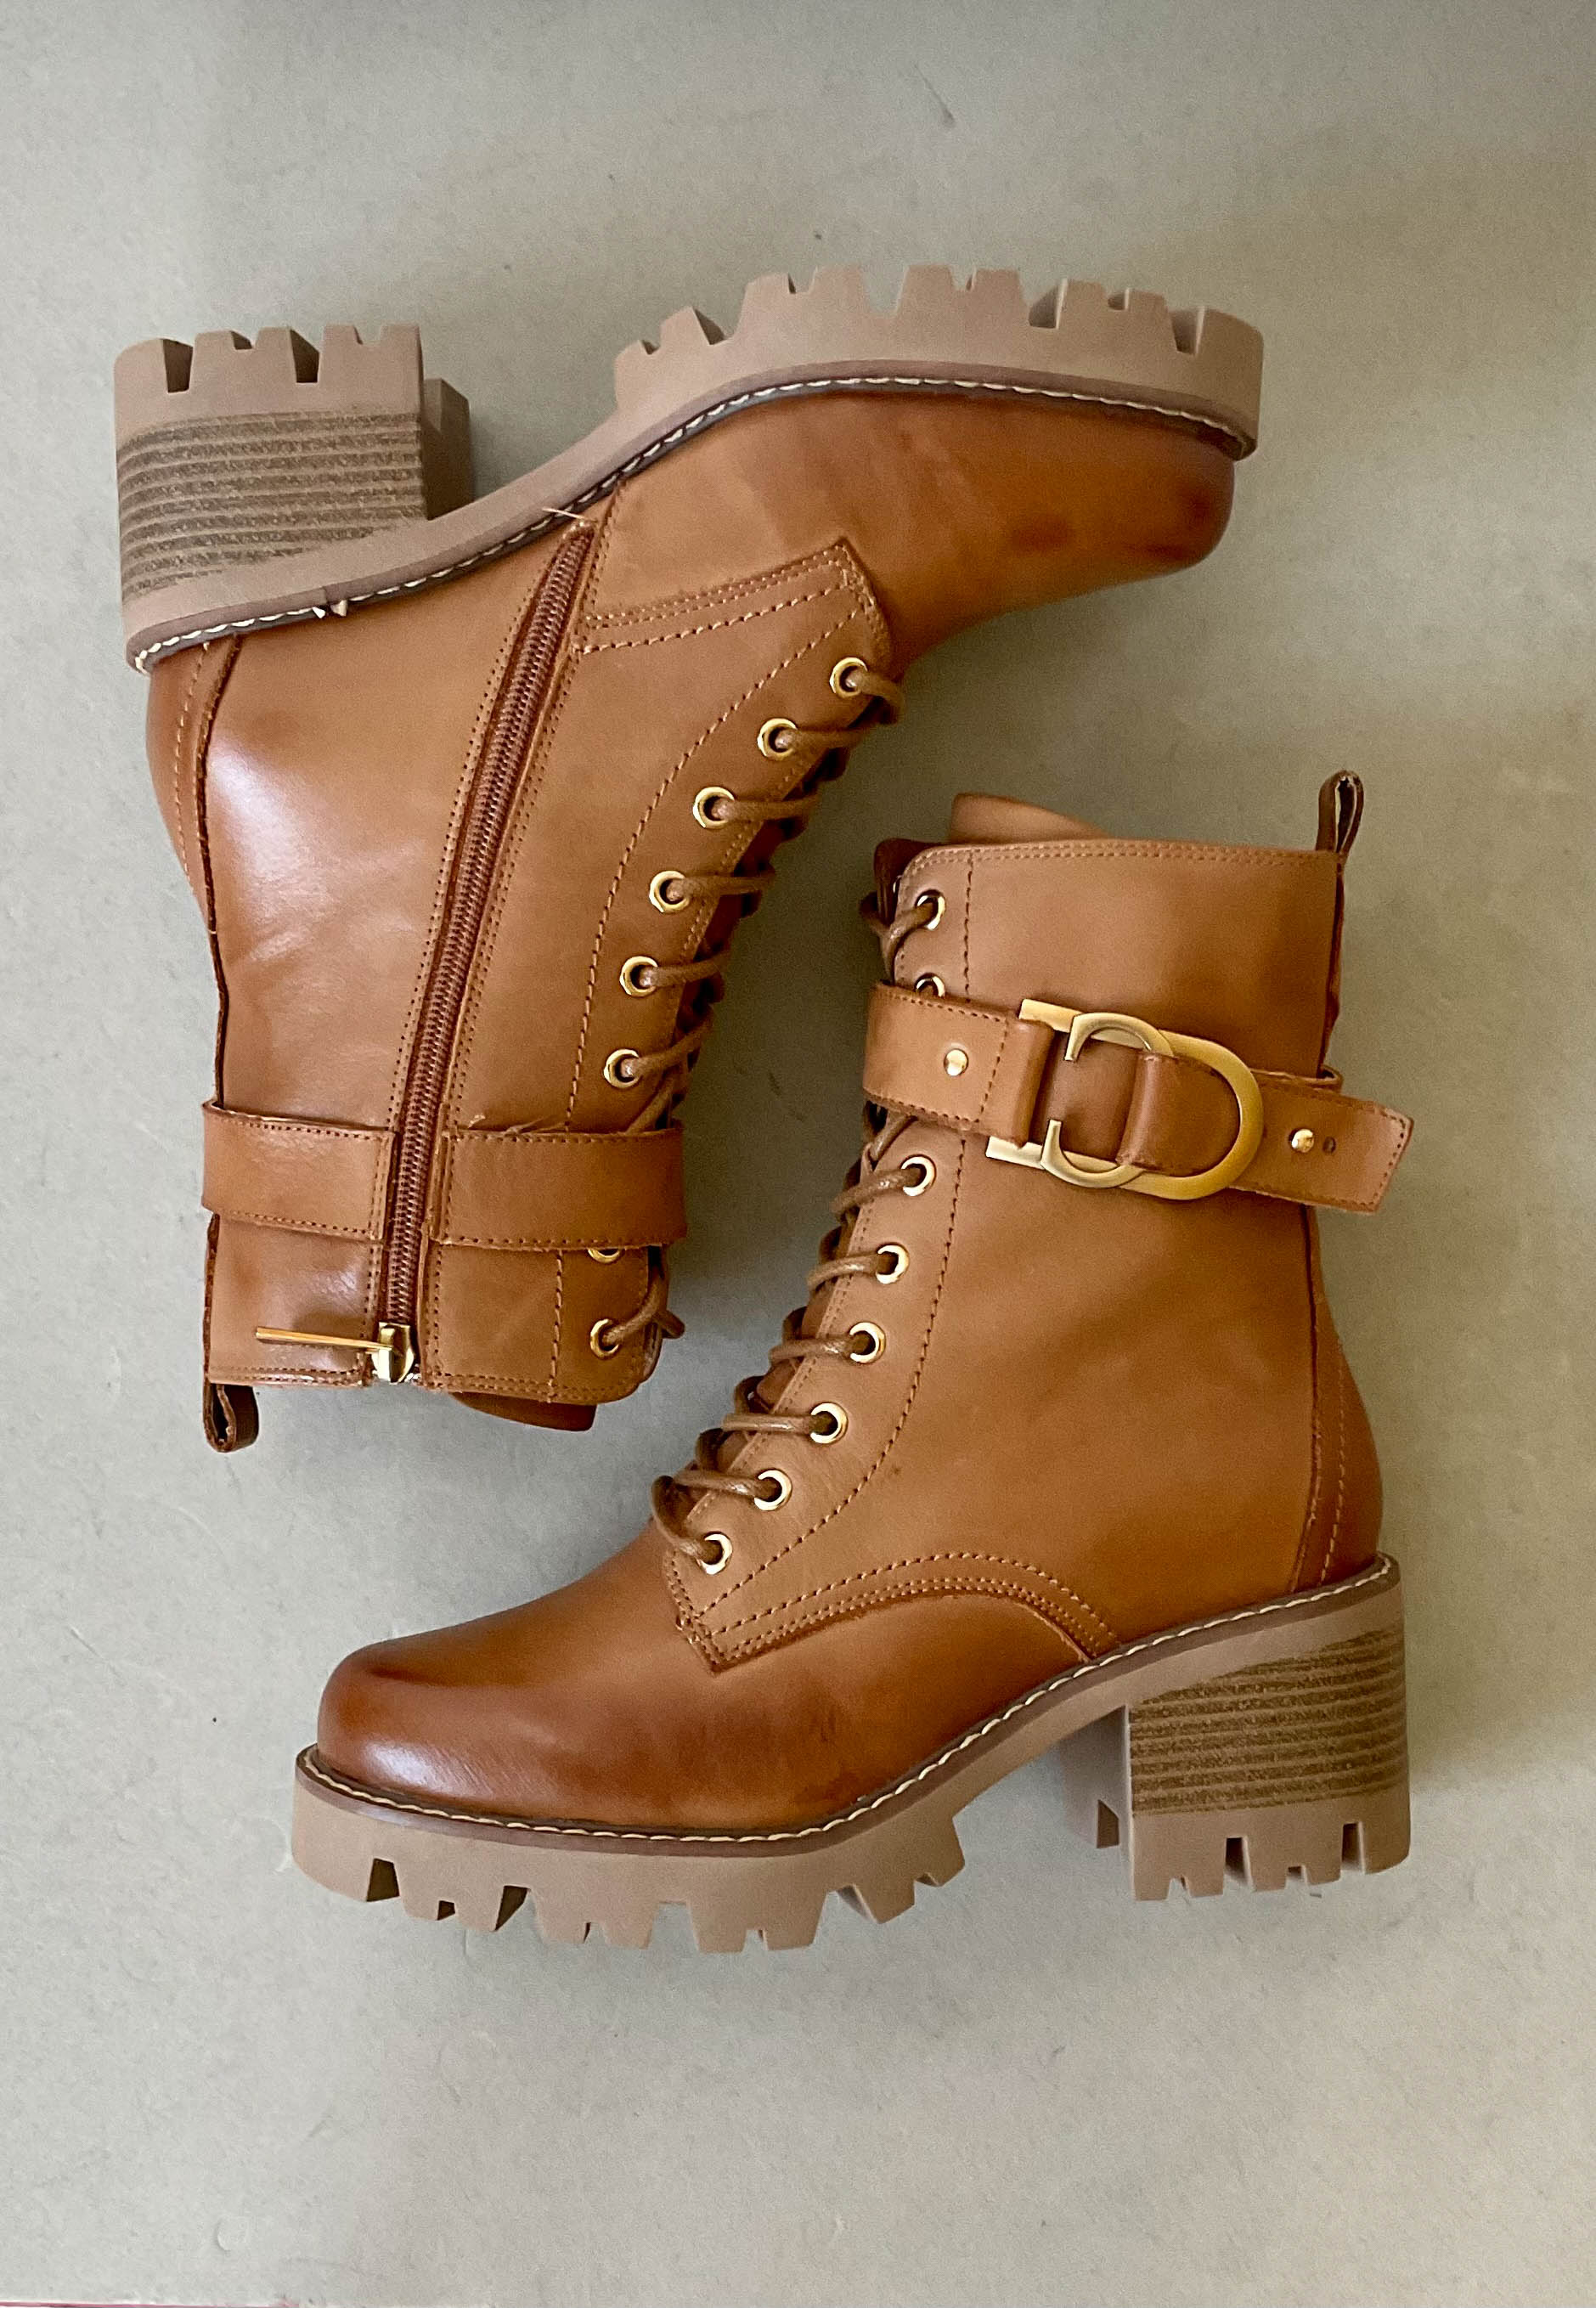 carmela tan leather boots